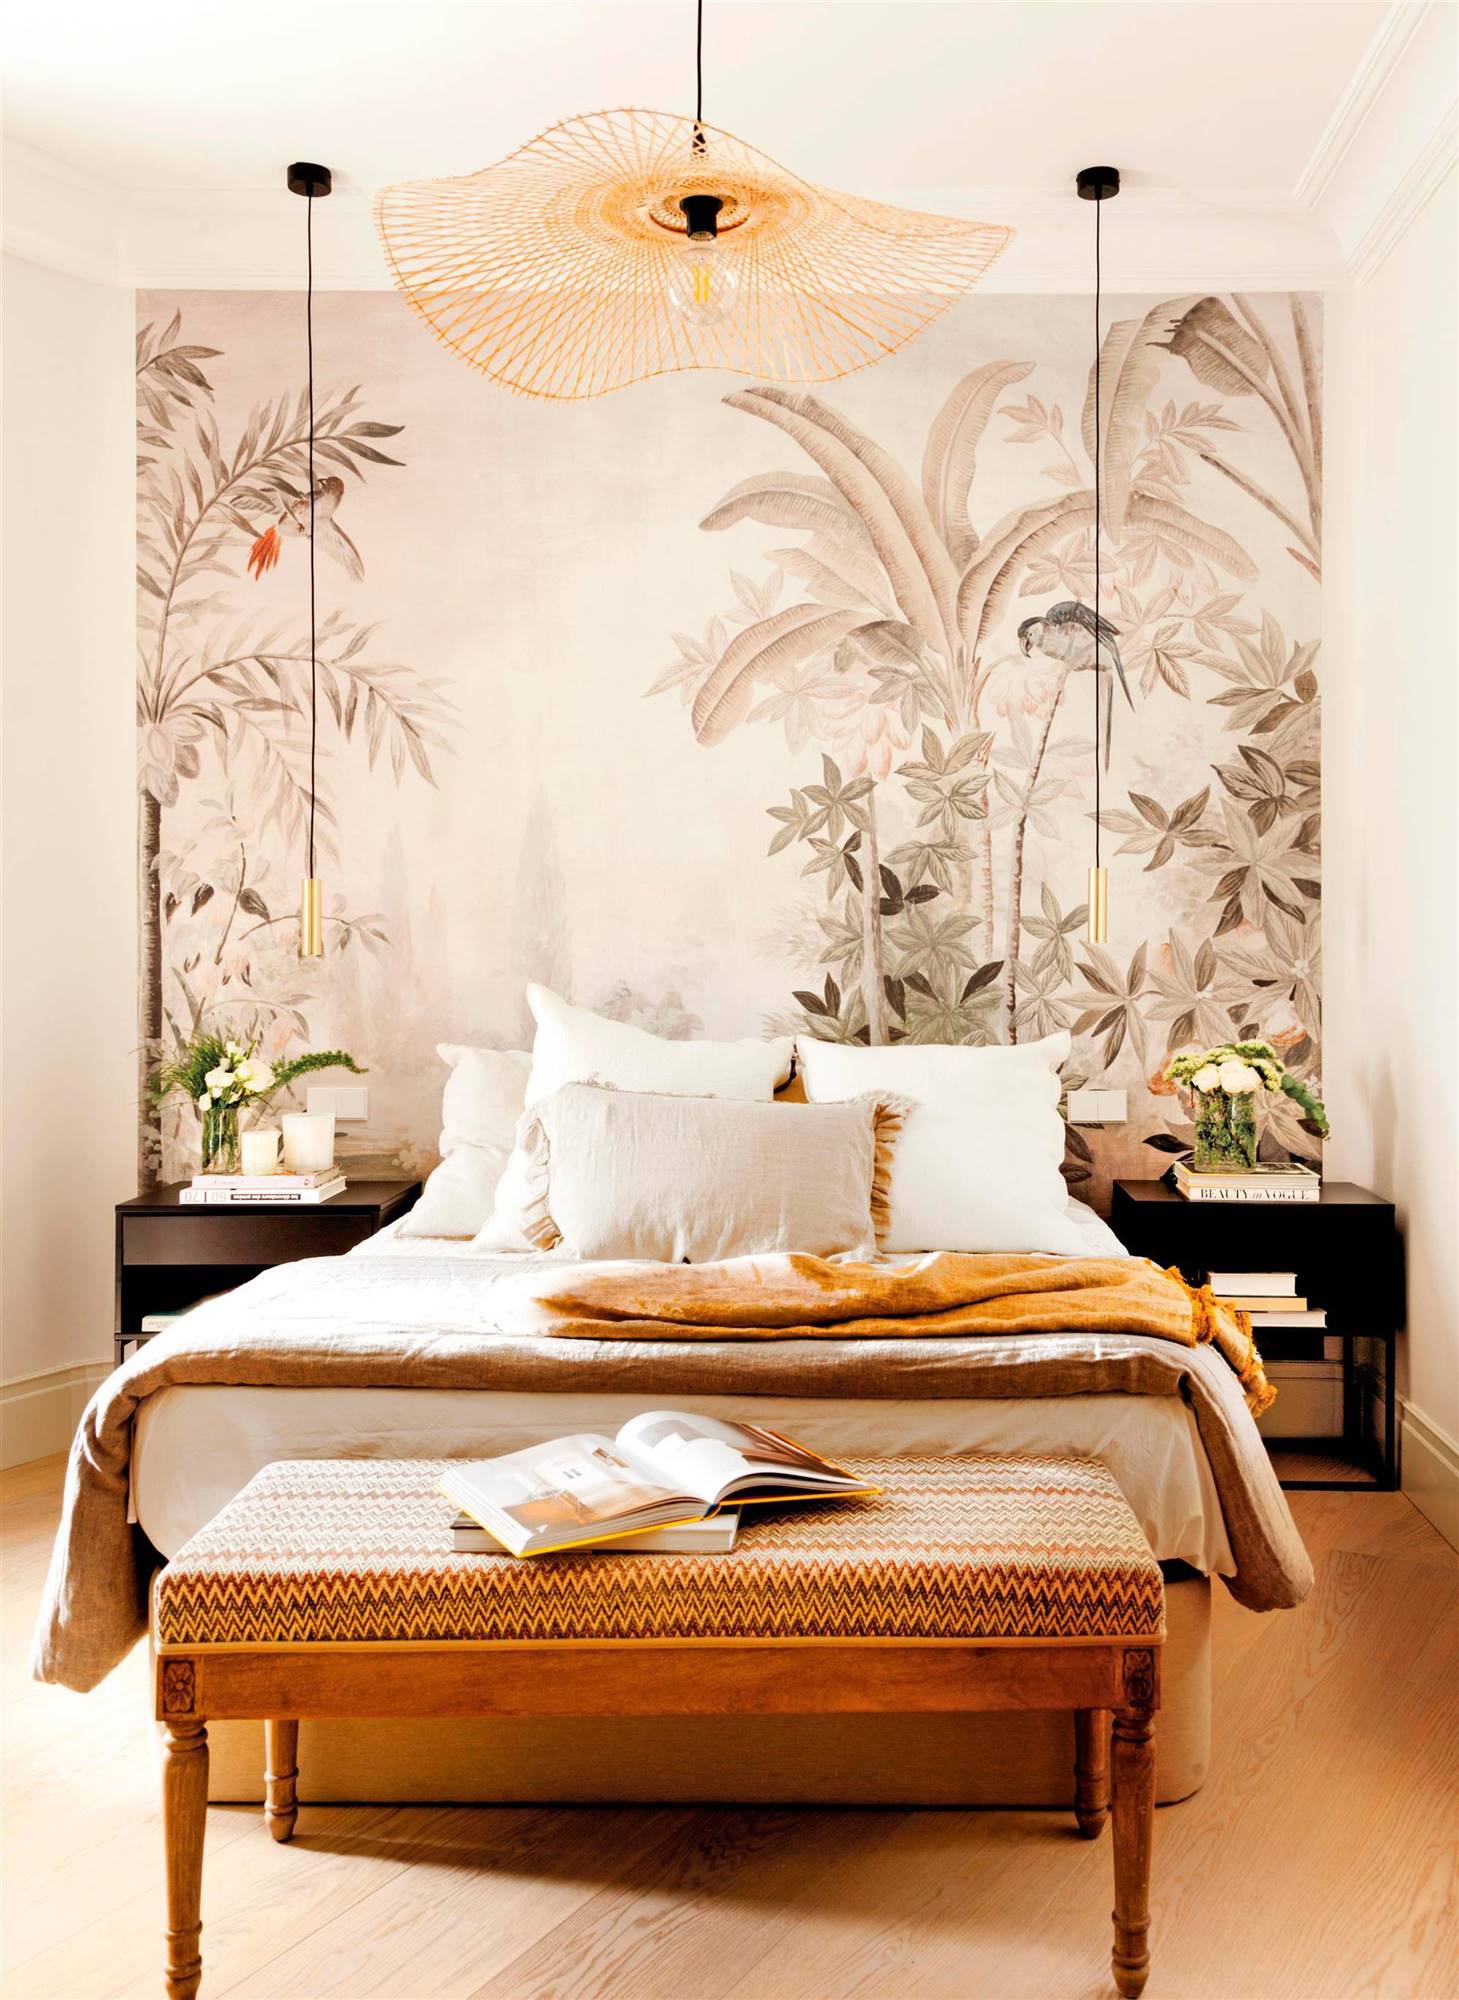 Dormitorio moderno con pared de cabecero revestido de un mural exótico, mesillas negras y lámparas suspendidas.